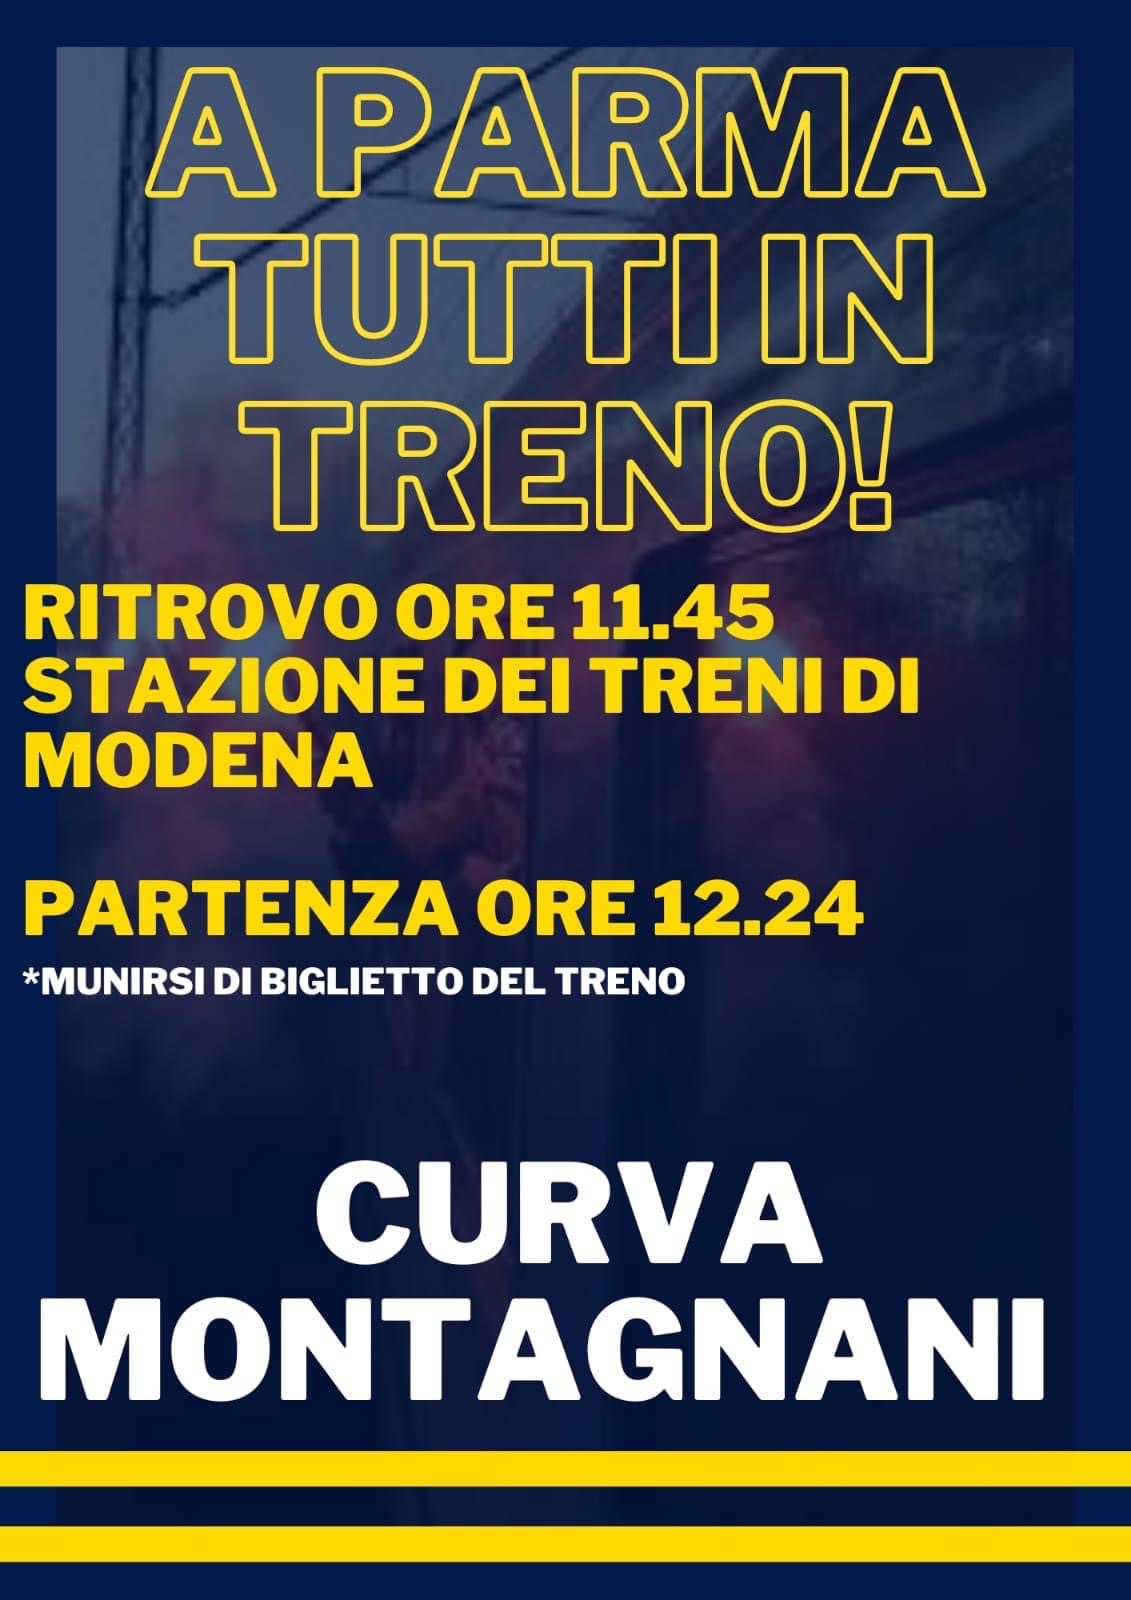  Esodo di tifosi del Modena a Parma: 1.768 sono i biglietti venduti